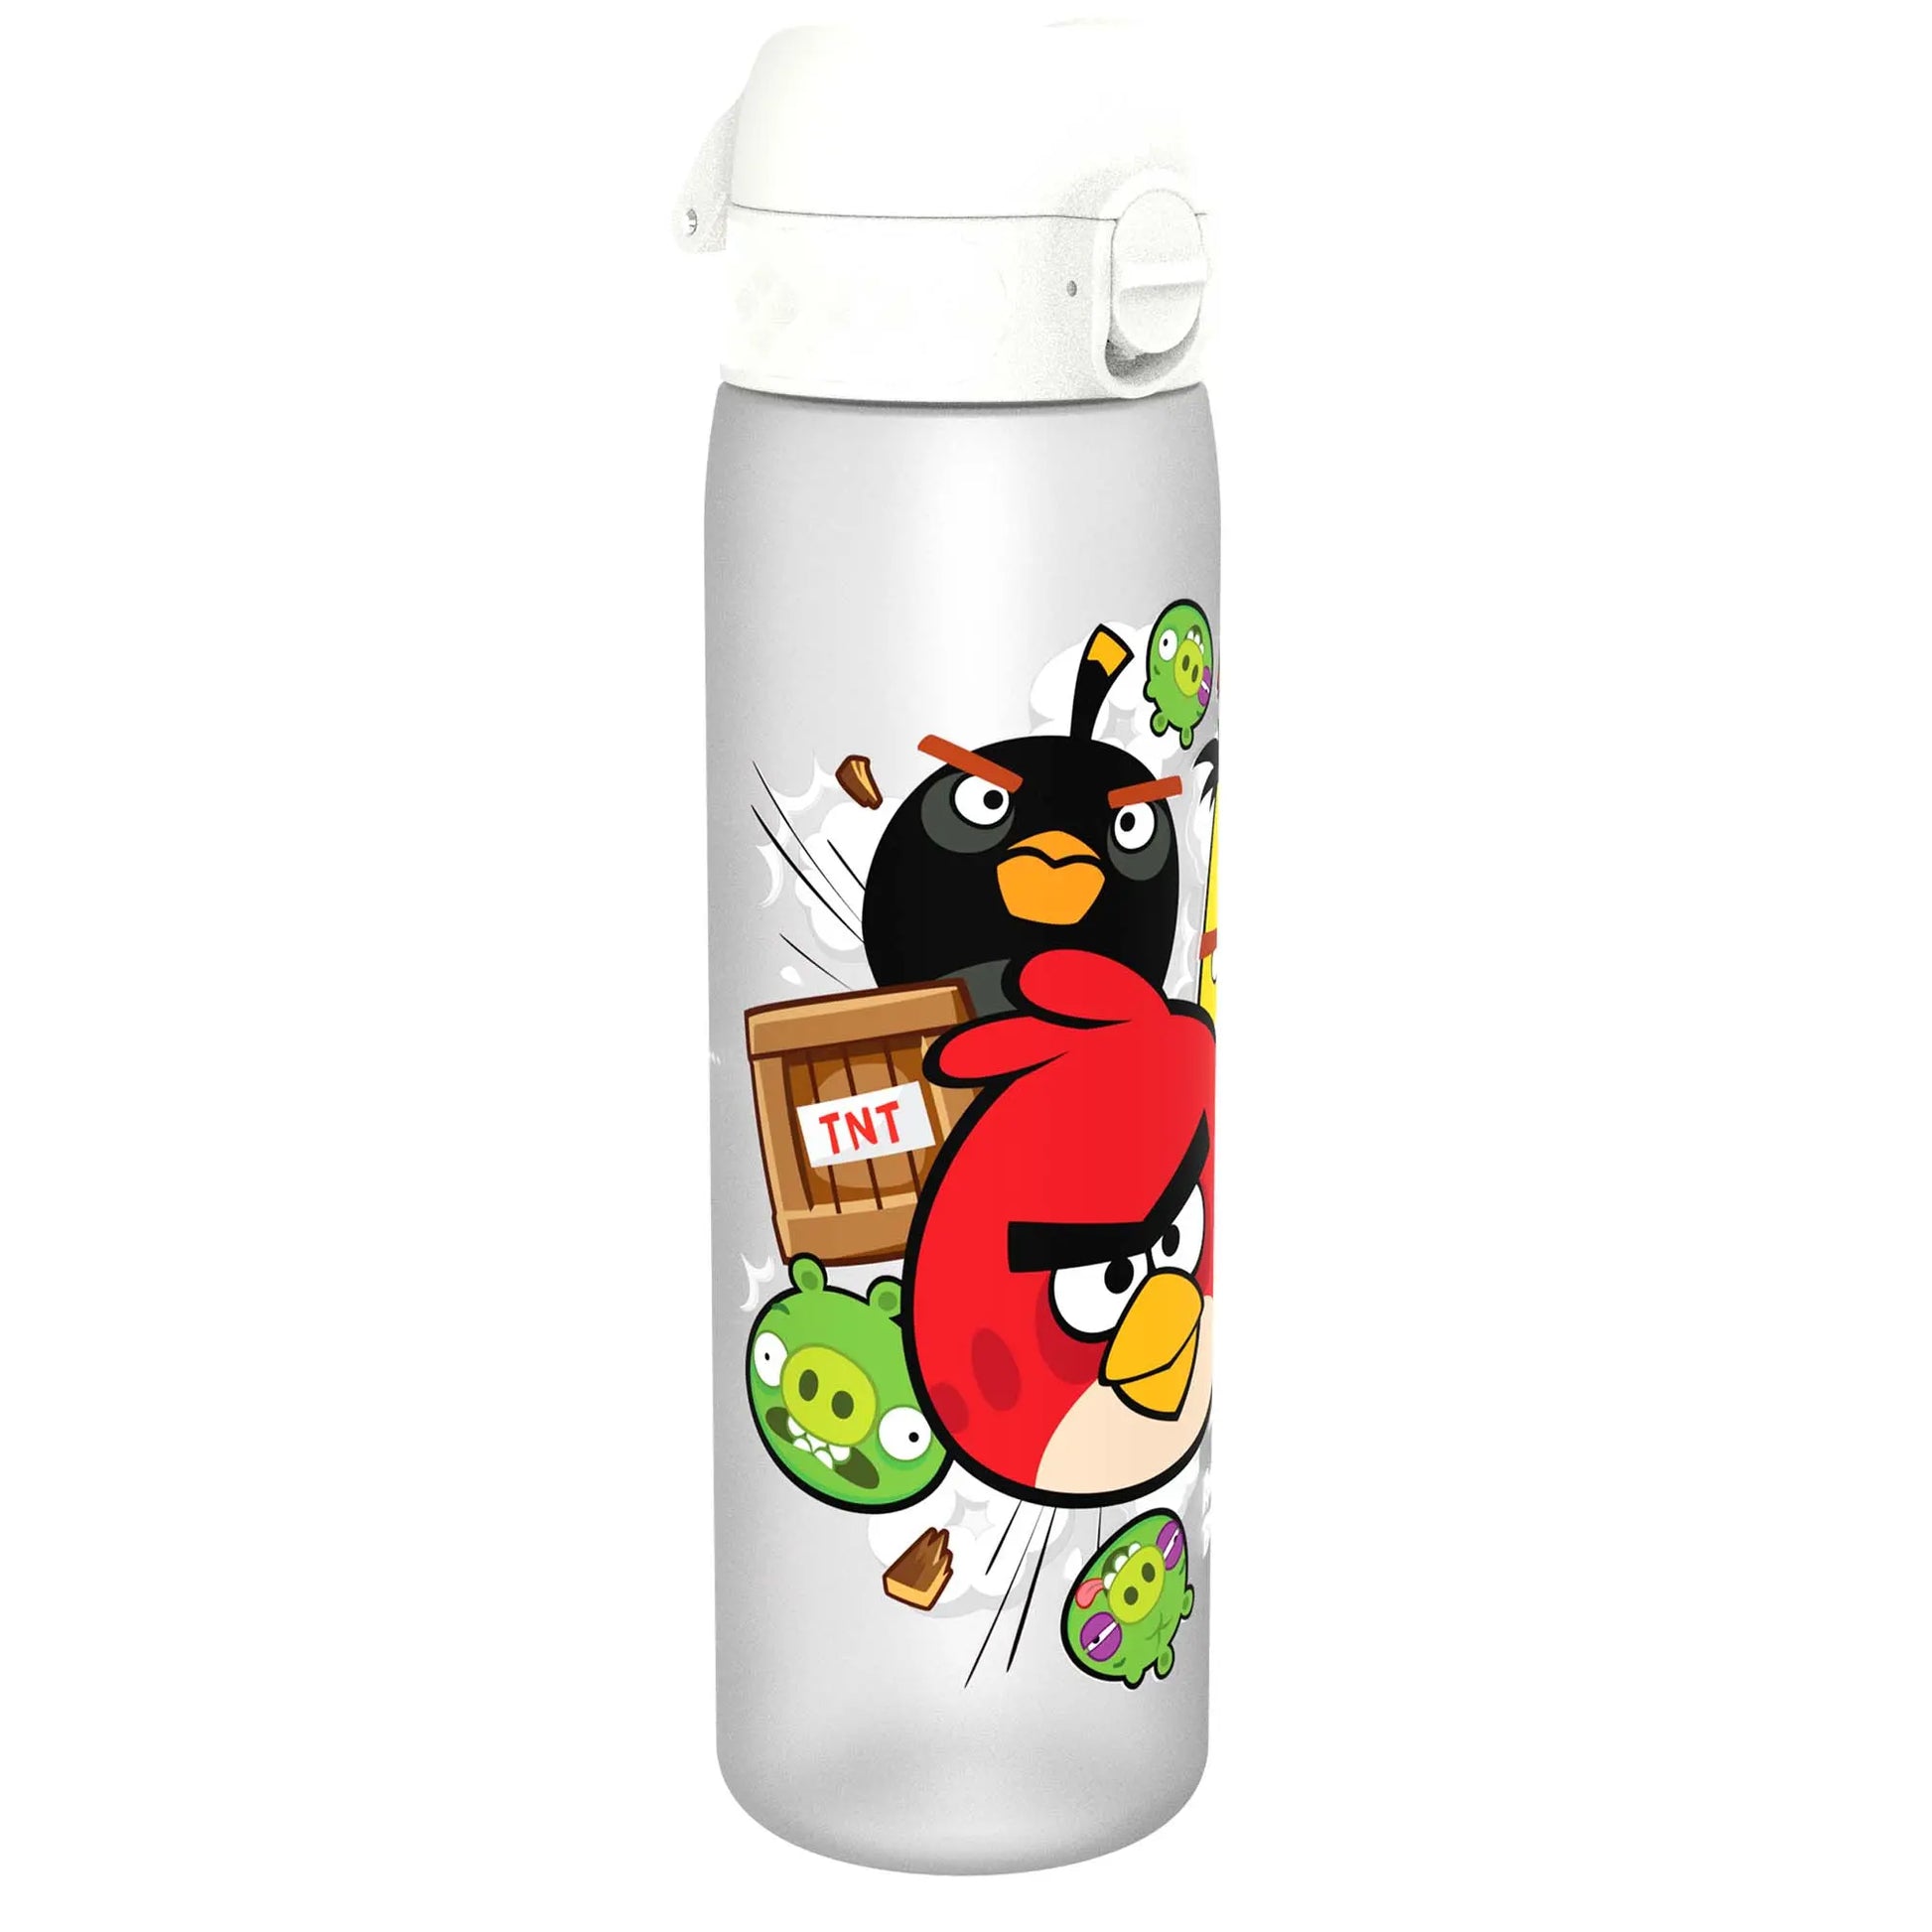 https://www.ion8.co.uk/cdn/shop/files/Leak-Proof-Slim-Water-Bottle_-Recyclon_-Angry-Birds-TNT_-500ml-_18oz_-Ion8-54699942.jpg?v=1703122156&width=1946